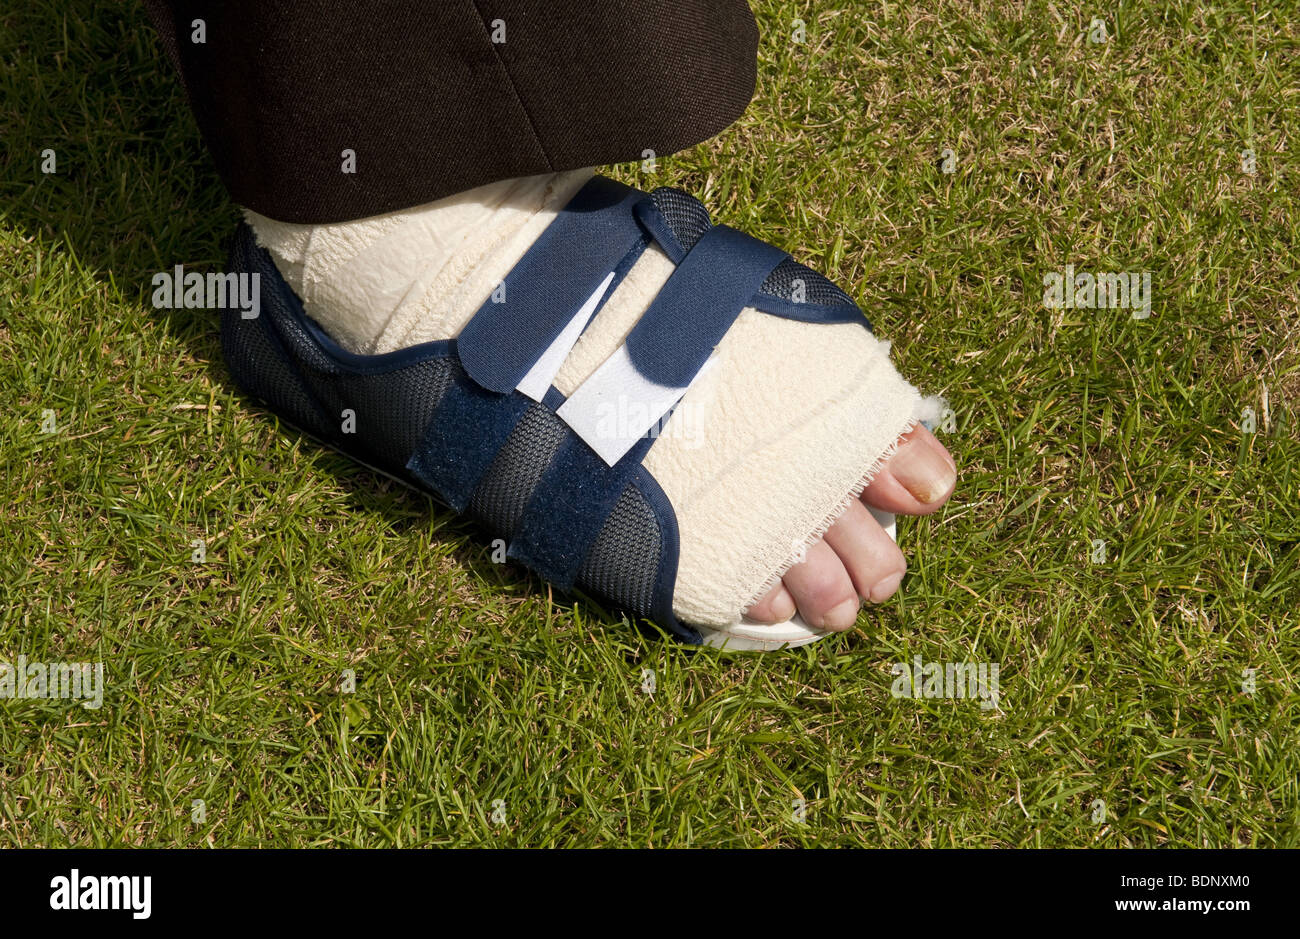 Adatto uomo piede bendato fino in velco sulla calzatura bunion dopo intervento chirurgico Foto Stock